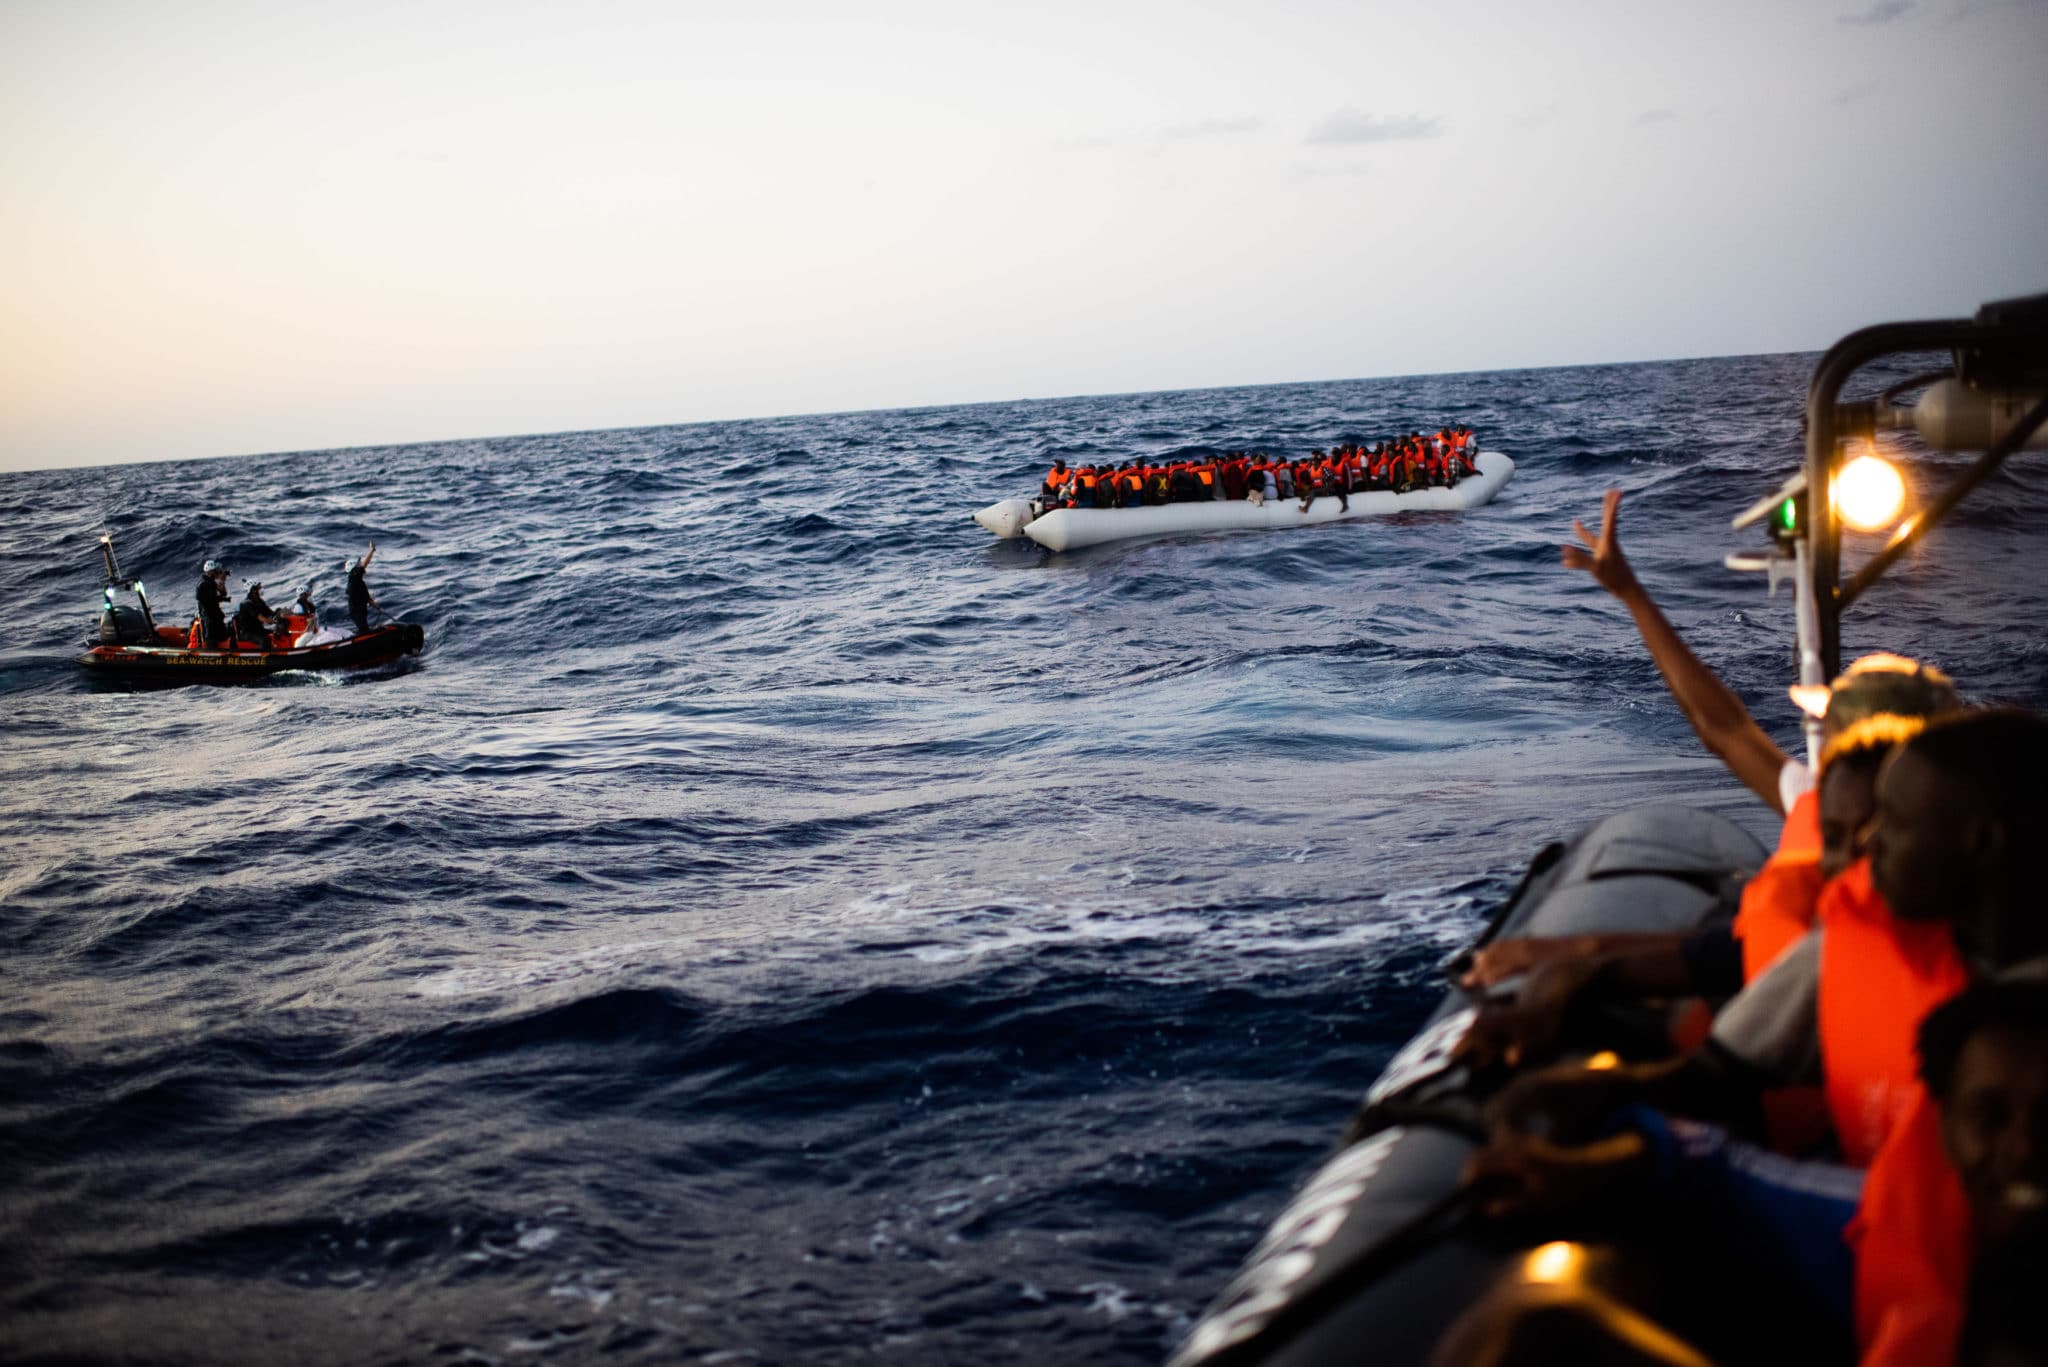 Seenotrettung Flüchtlinge